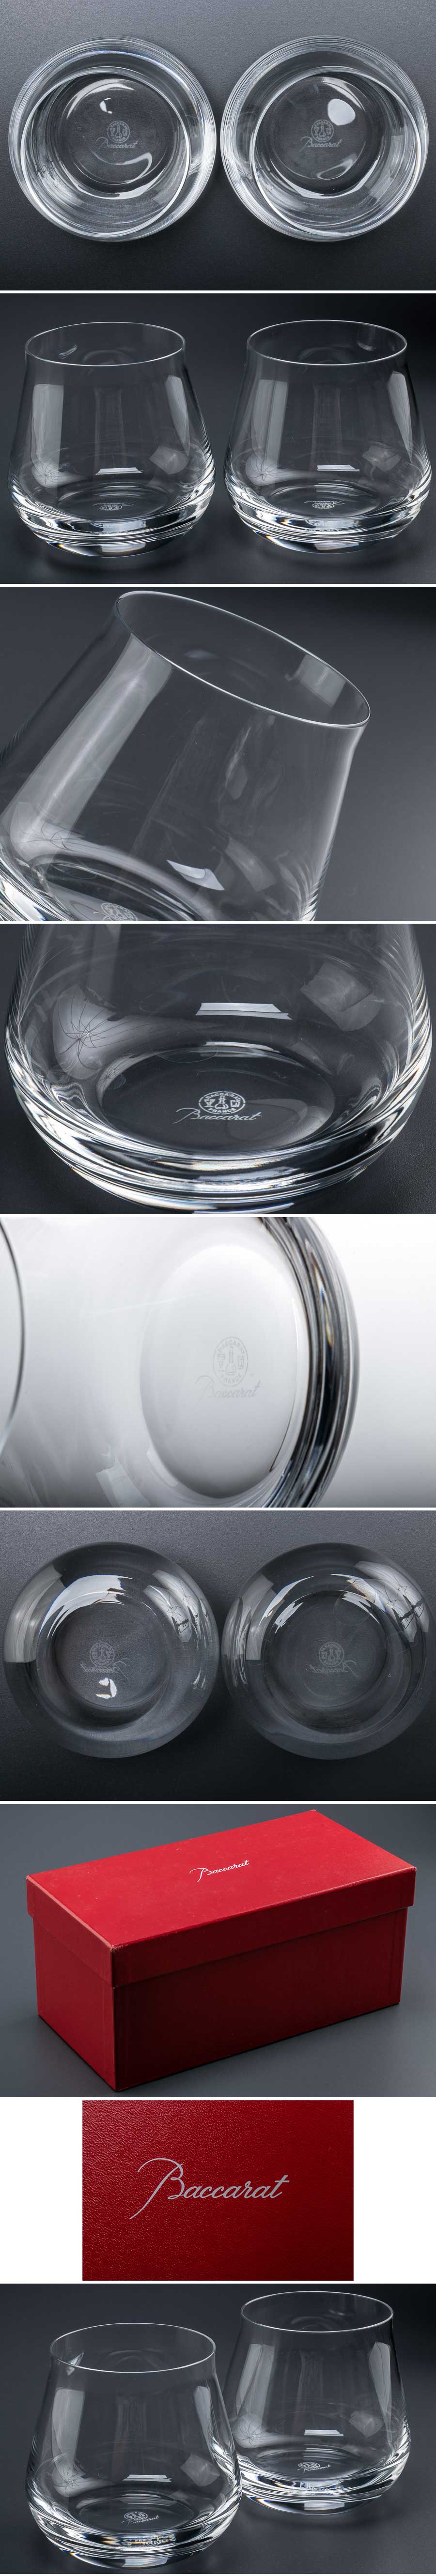 特価超歓迎『 Baccarat バカラ シャトーバカラ タンブラー 2客 箱付 8219 』 2個組 洋食器 ブランド テーブルウェア クリスタルガラス 工芸ガラス